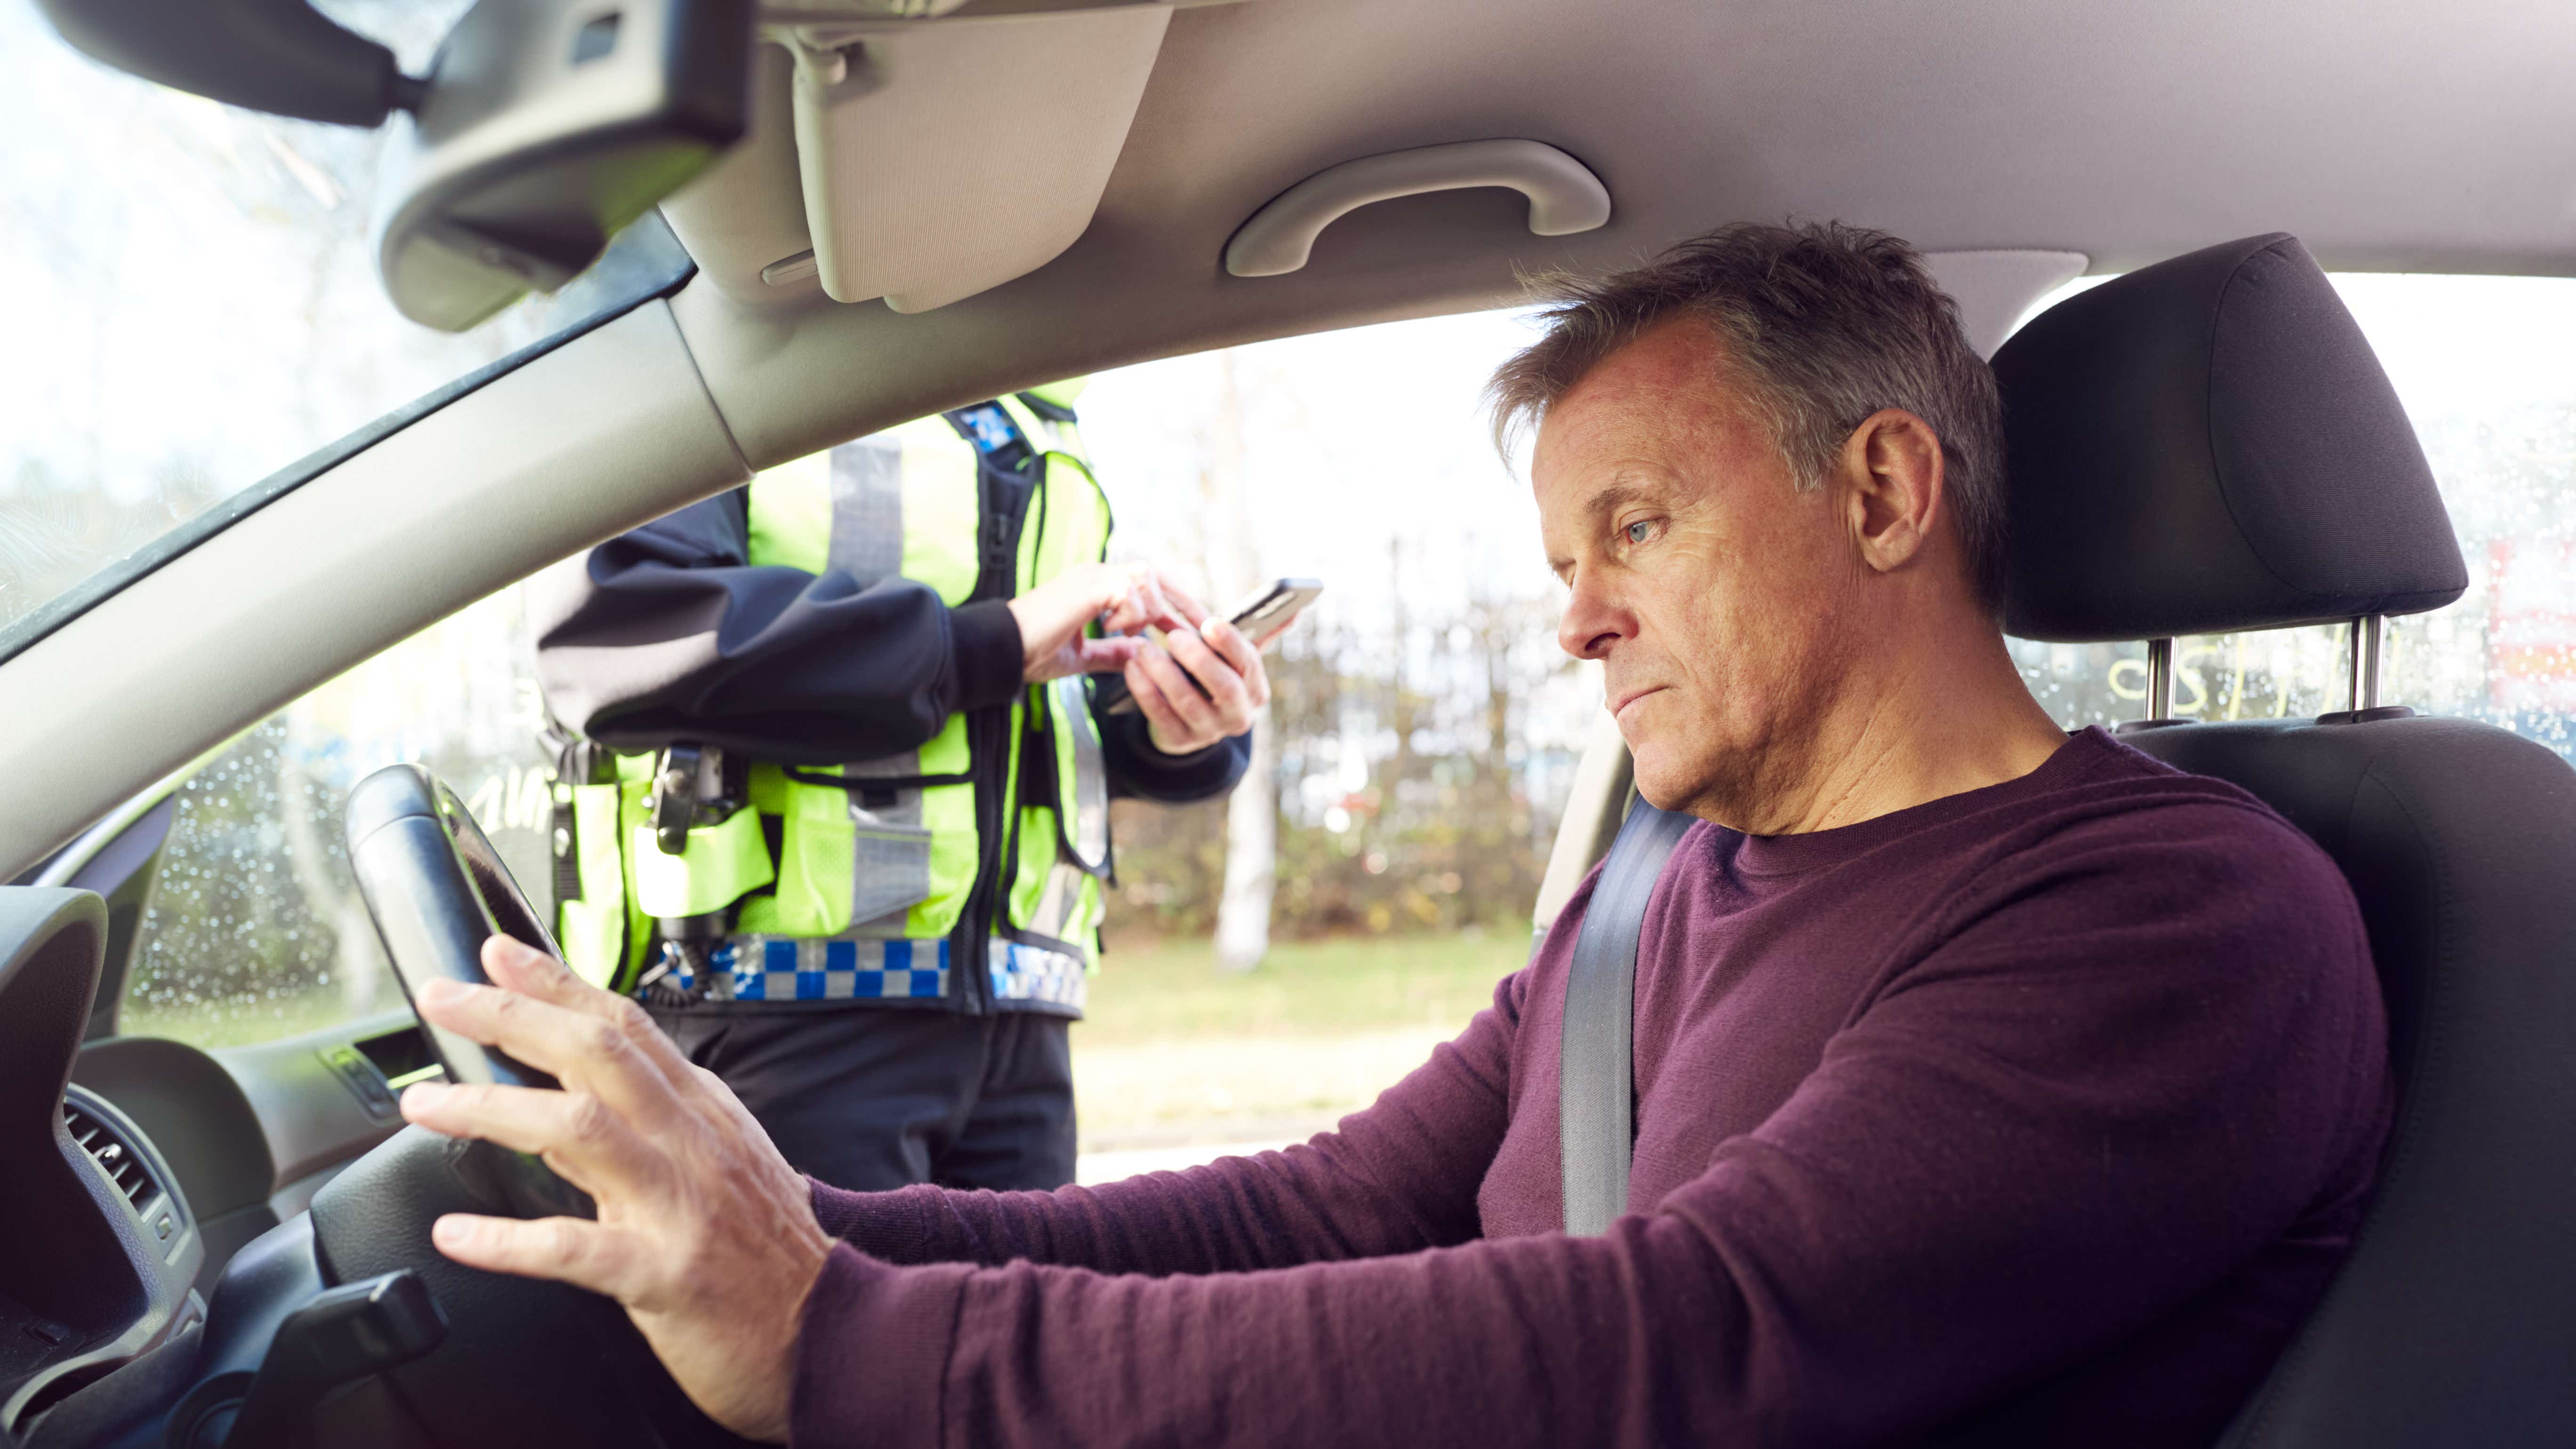 קצין משטרה כותב כרטיס או הוצאת קנס לנהג מכונית גברית